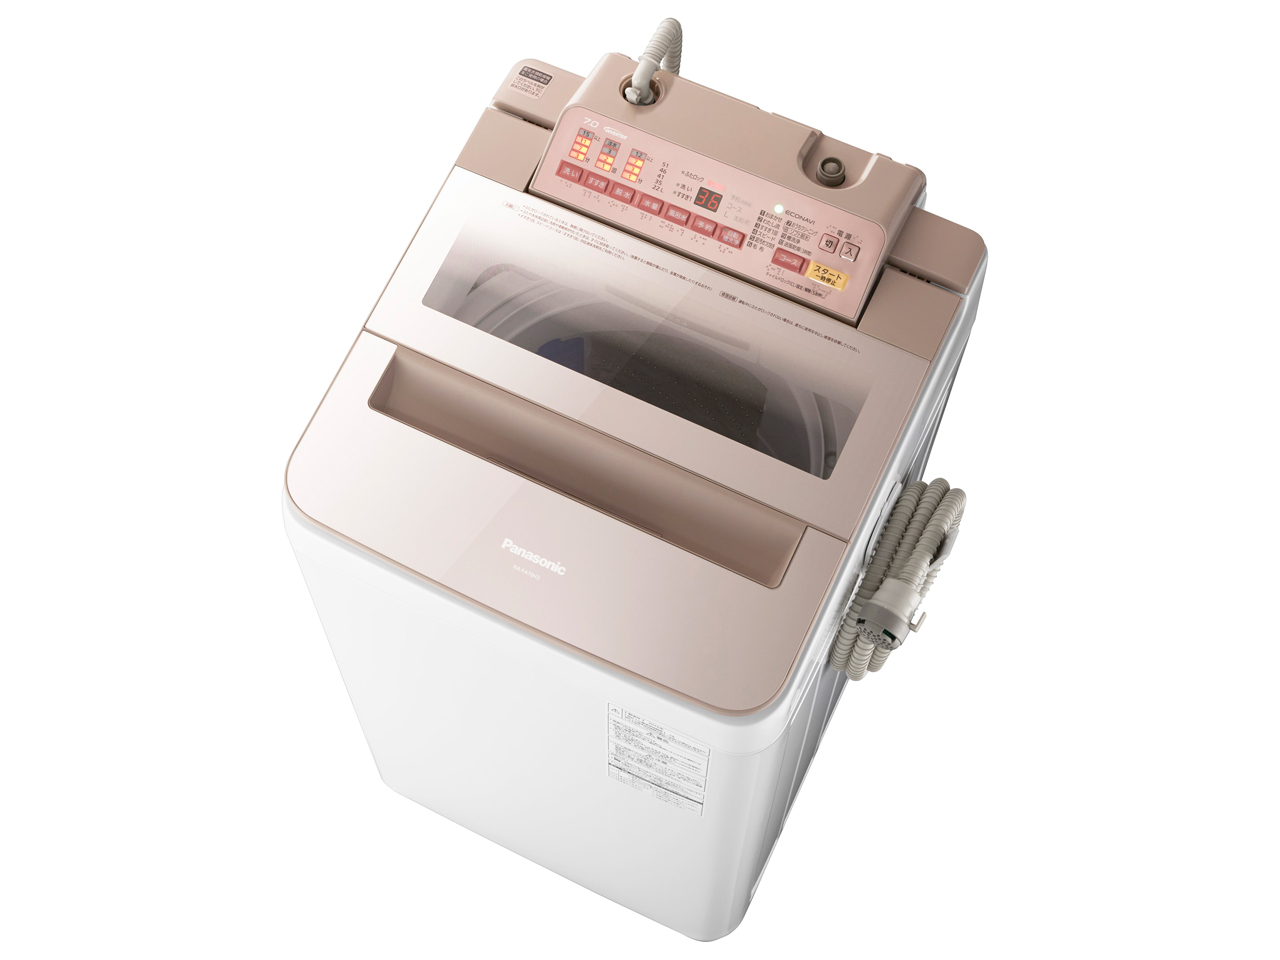 パナソニック NA-FA70H3-P 全自動洗濯機(洗濯7.0kg) ピンク